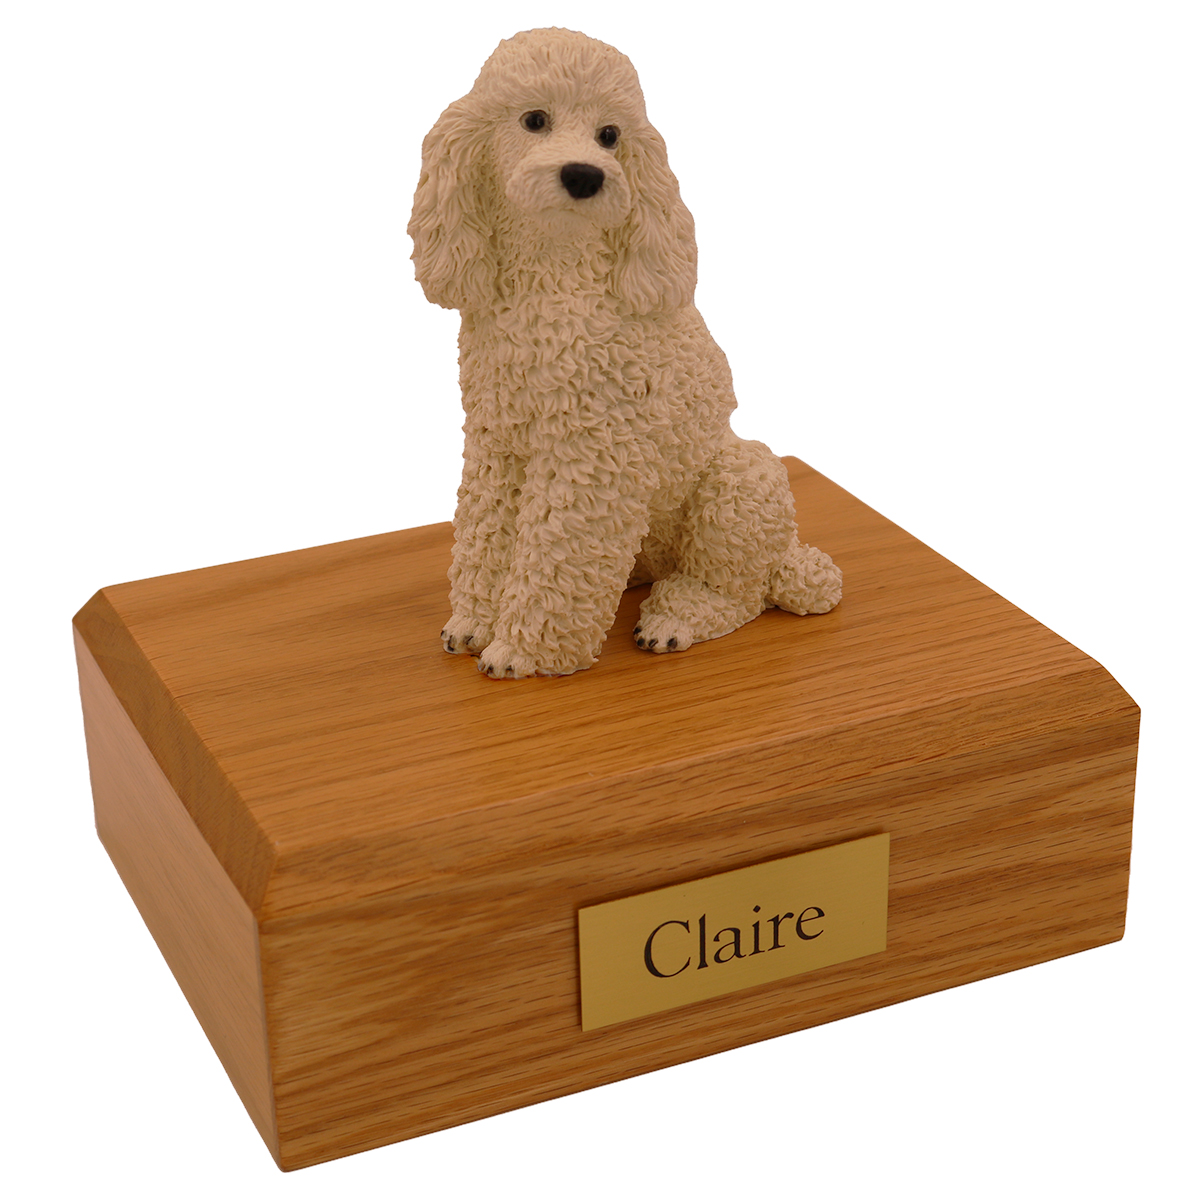 Dog, Poodle, Sitting, White - Figurine Urn